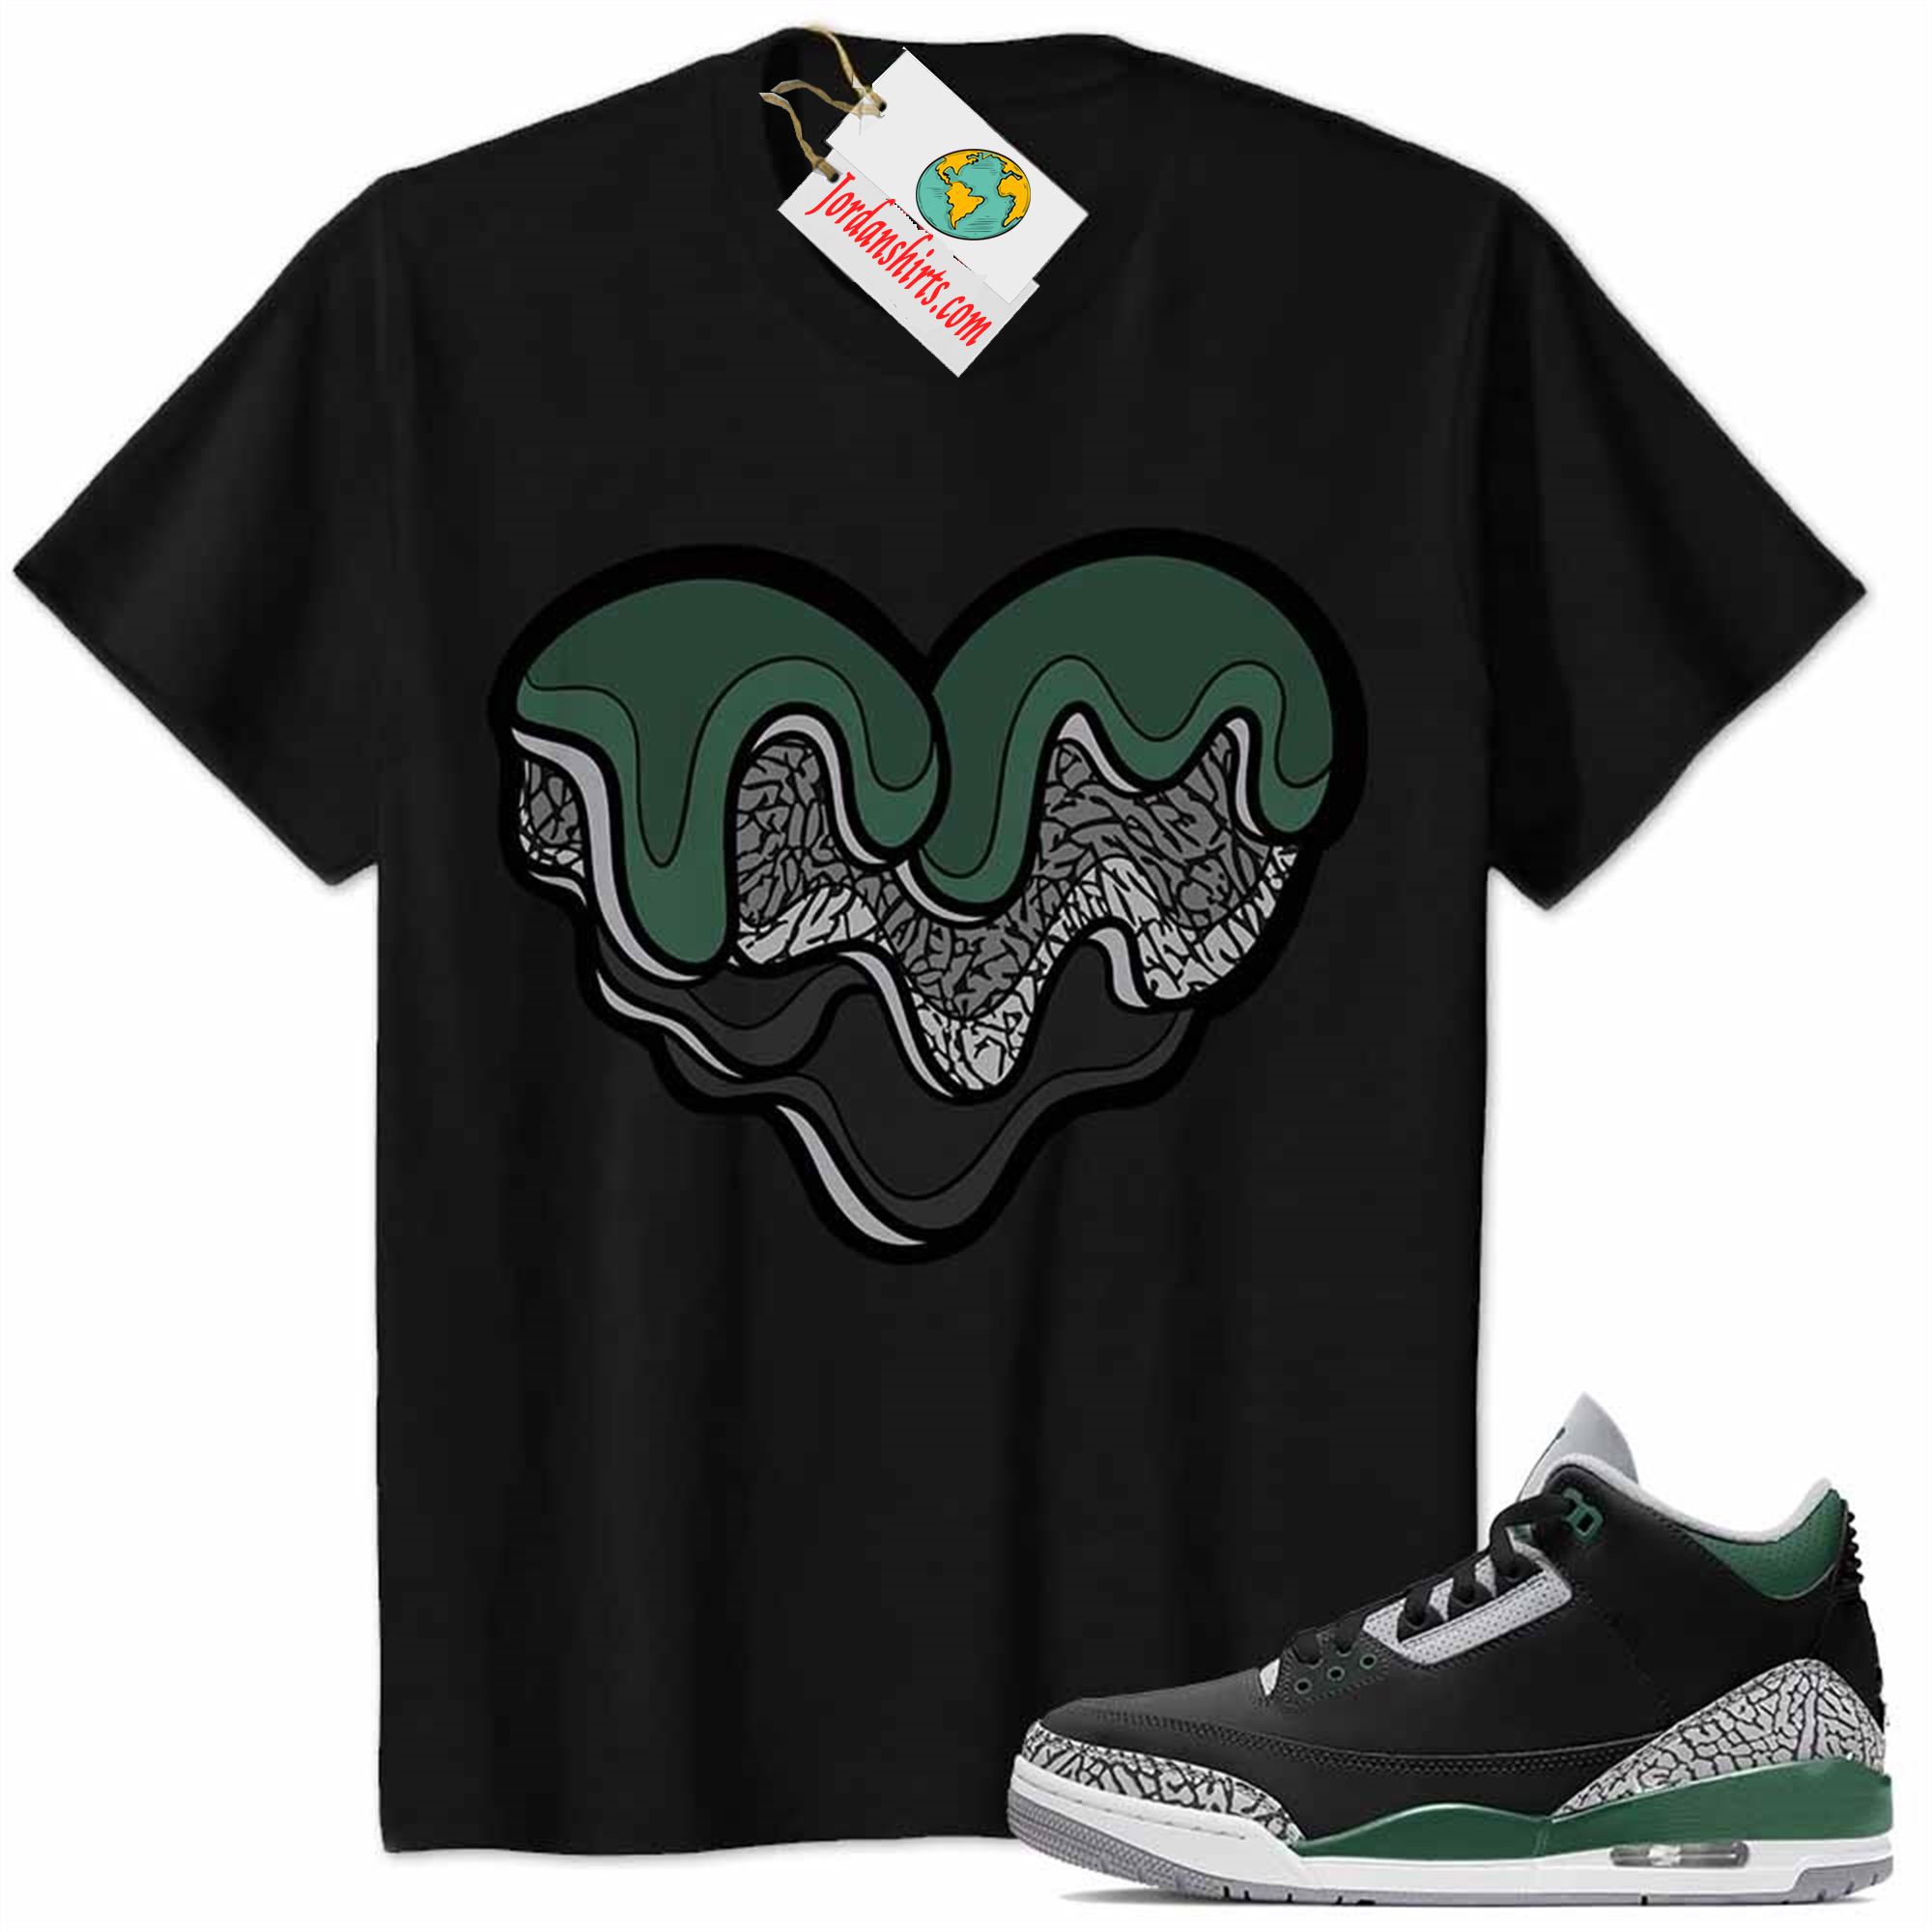 Jordan 3 Shirt, Melt Dripping Heart Black Air Jordan 3 Pine Green 3s Size Up To 5xl